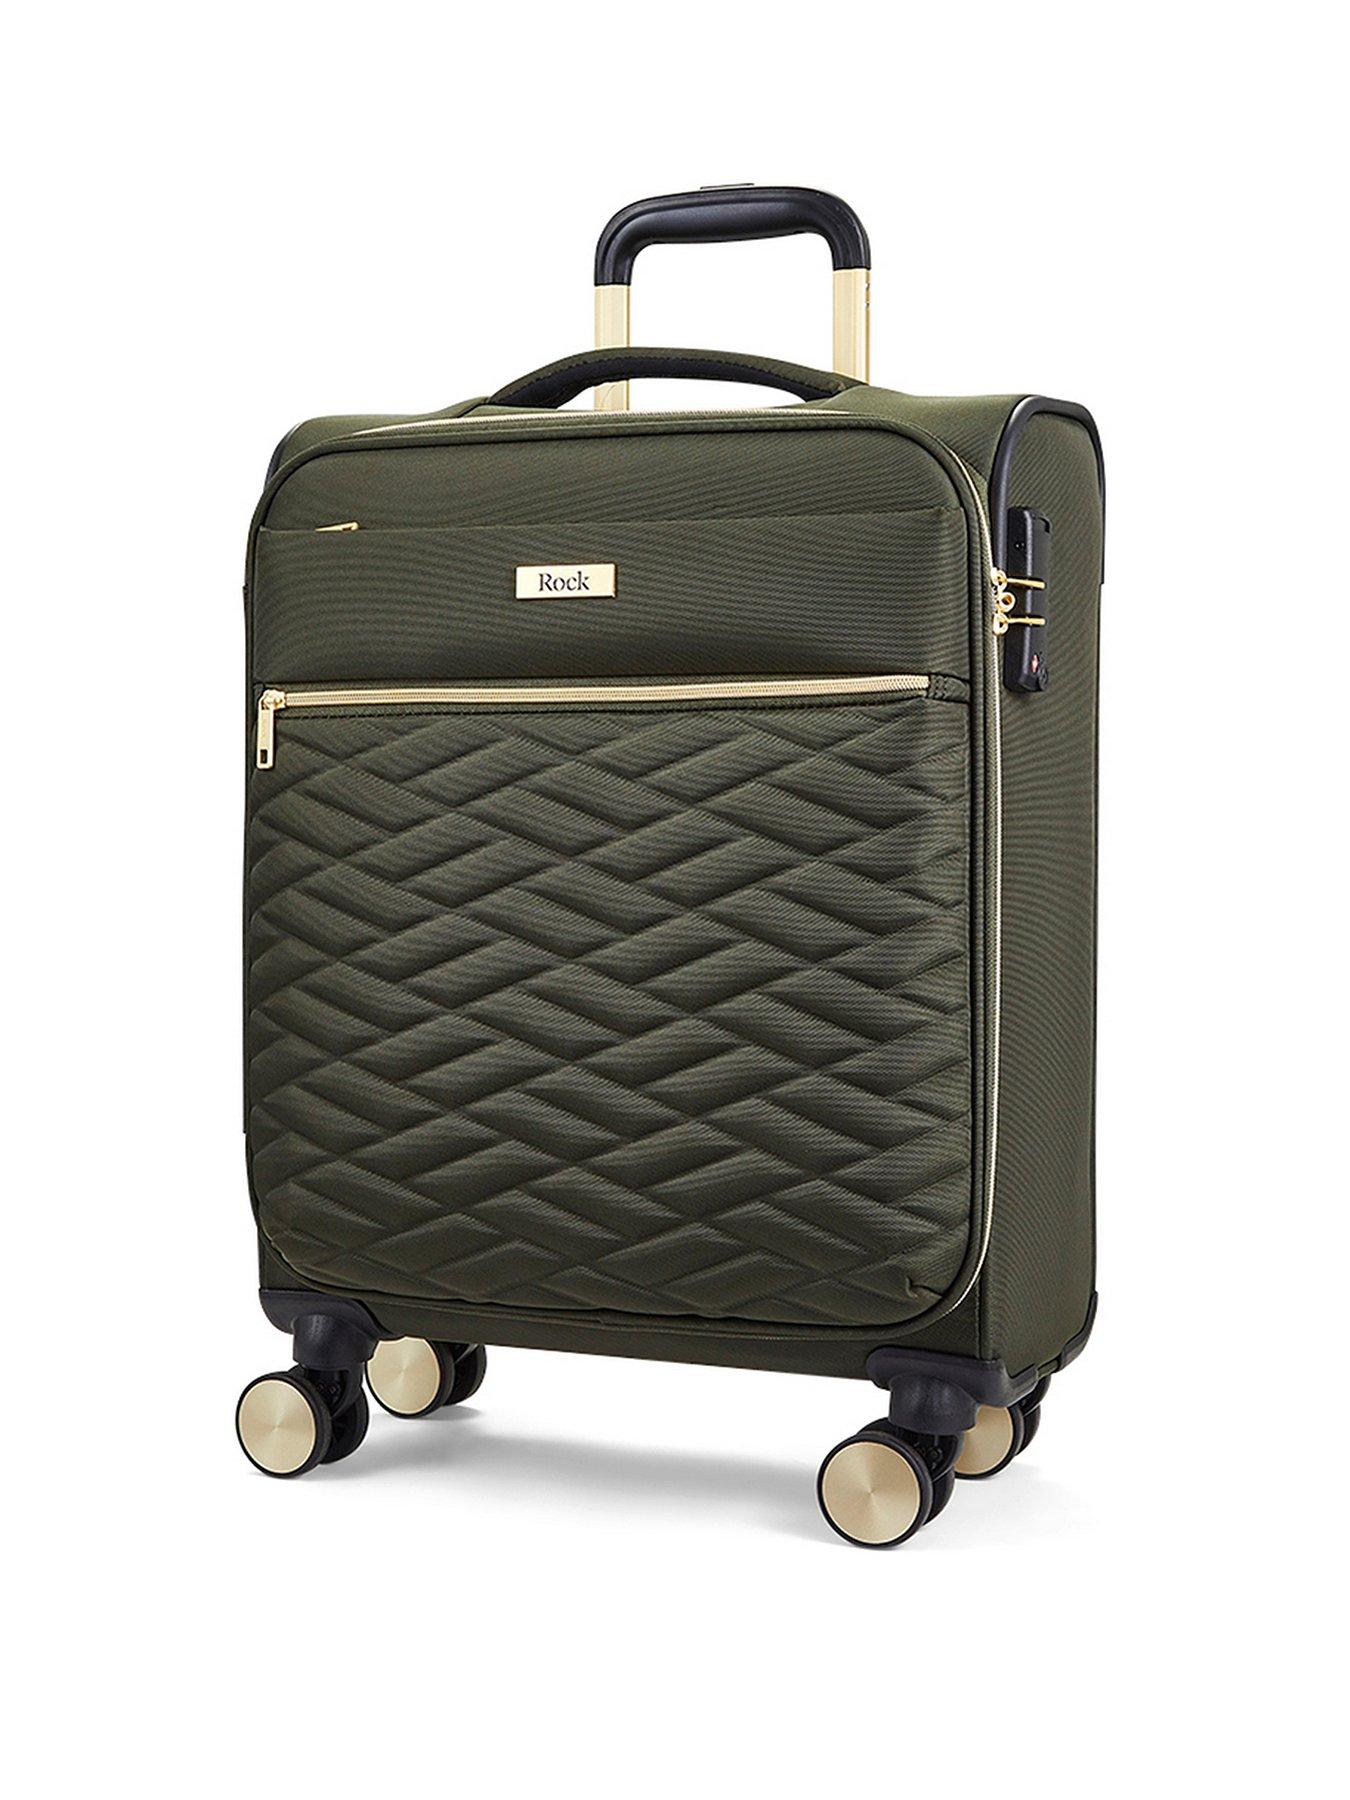 Rock Luggage Sloane Softshell 8 Wheel Expander With Tsa Lock Small Suitcase -Khaki